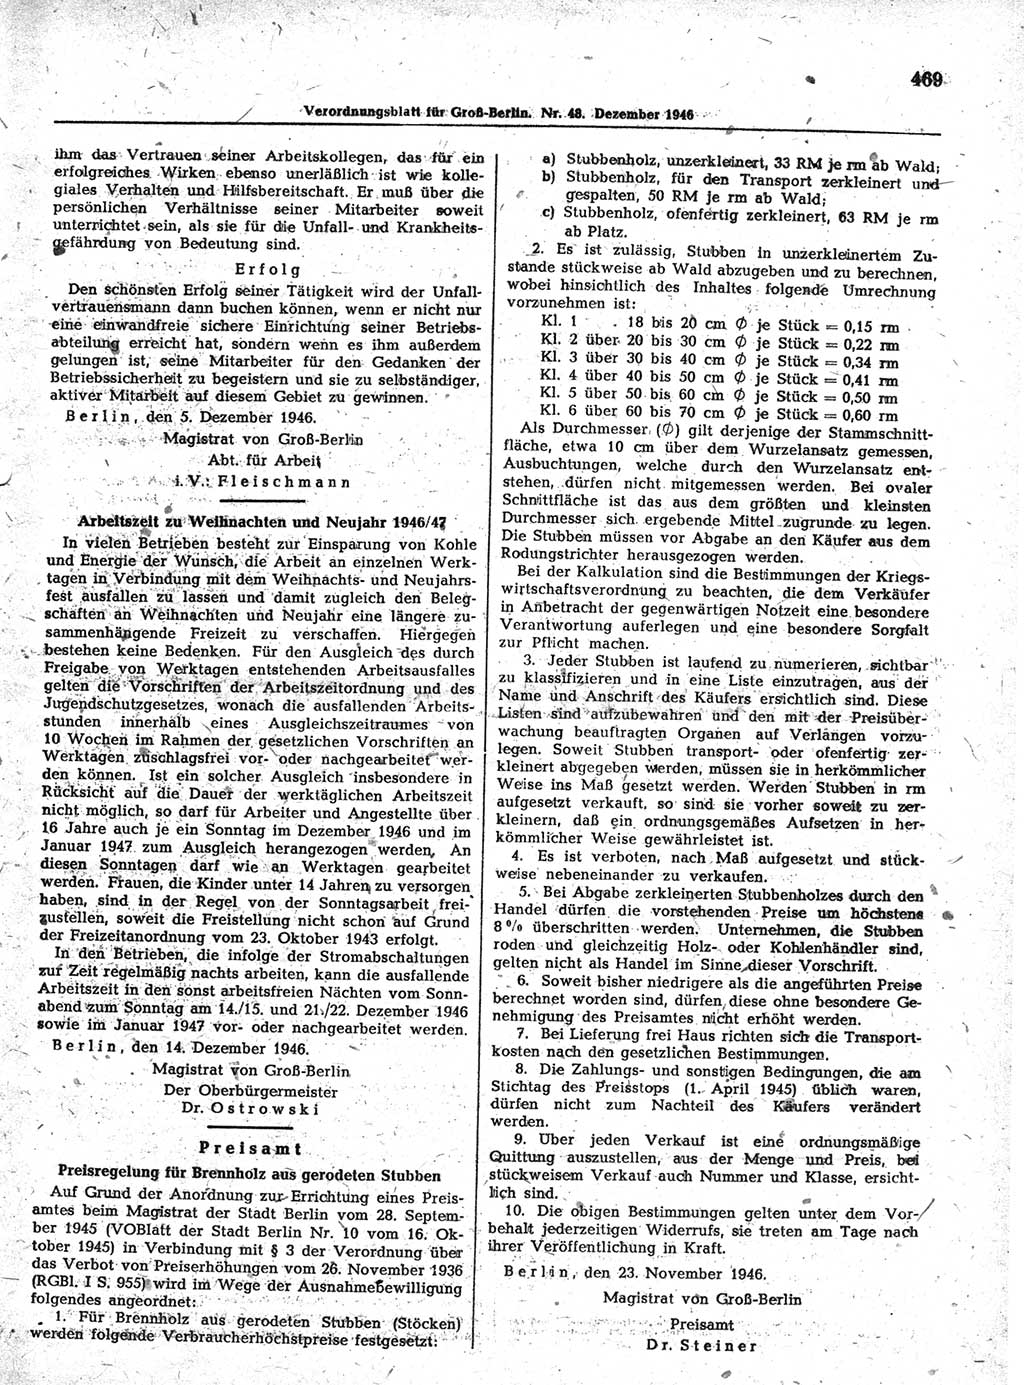 Verordnungsblatt (VOBl.) der Stadt Berlin, für Groß-Berlin 1946, Seite 469 (VOBl. Bln. 1946, S. 469)